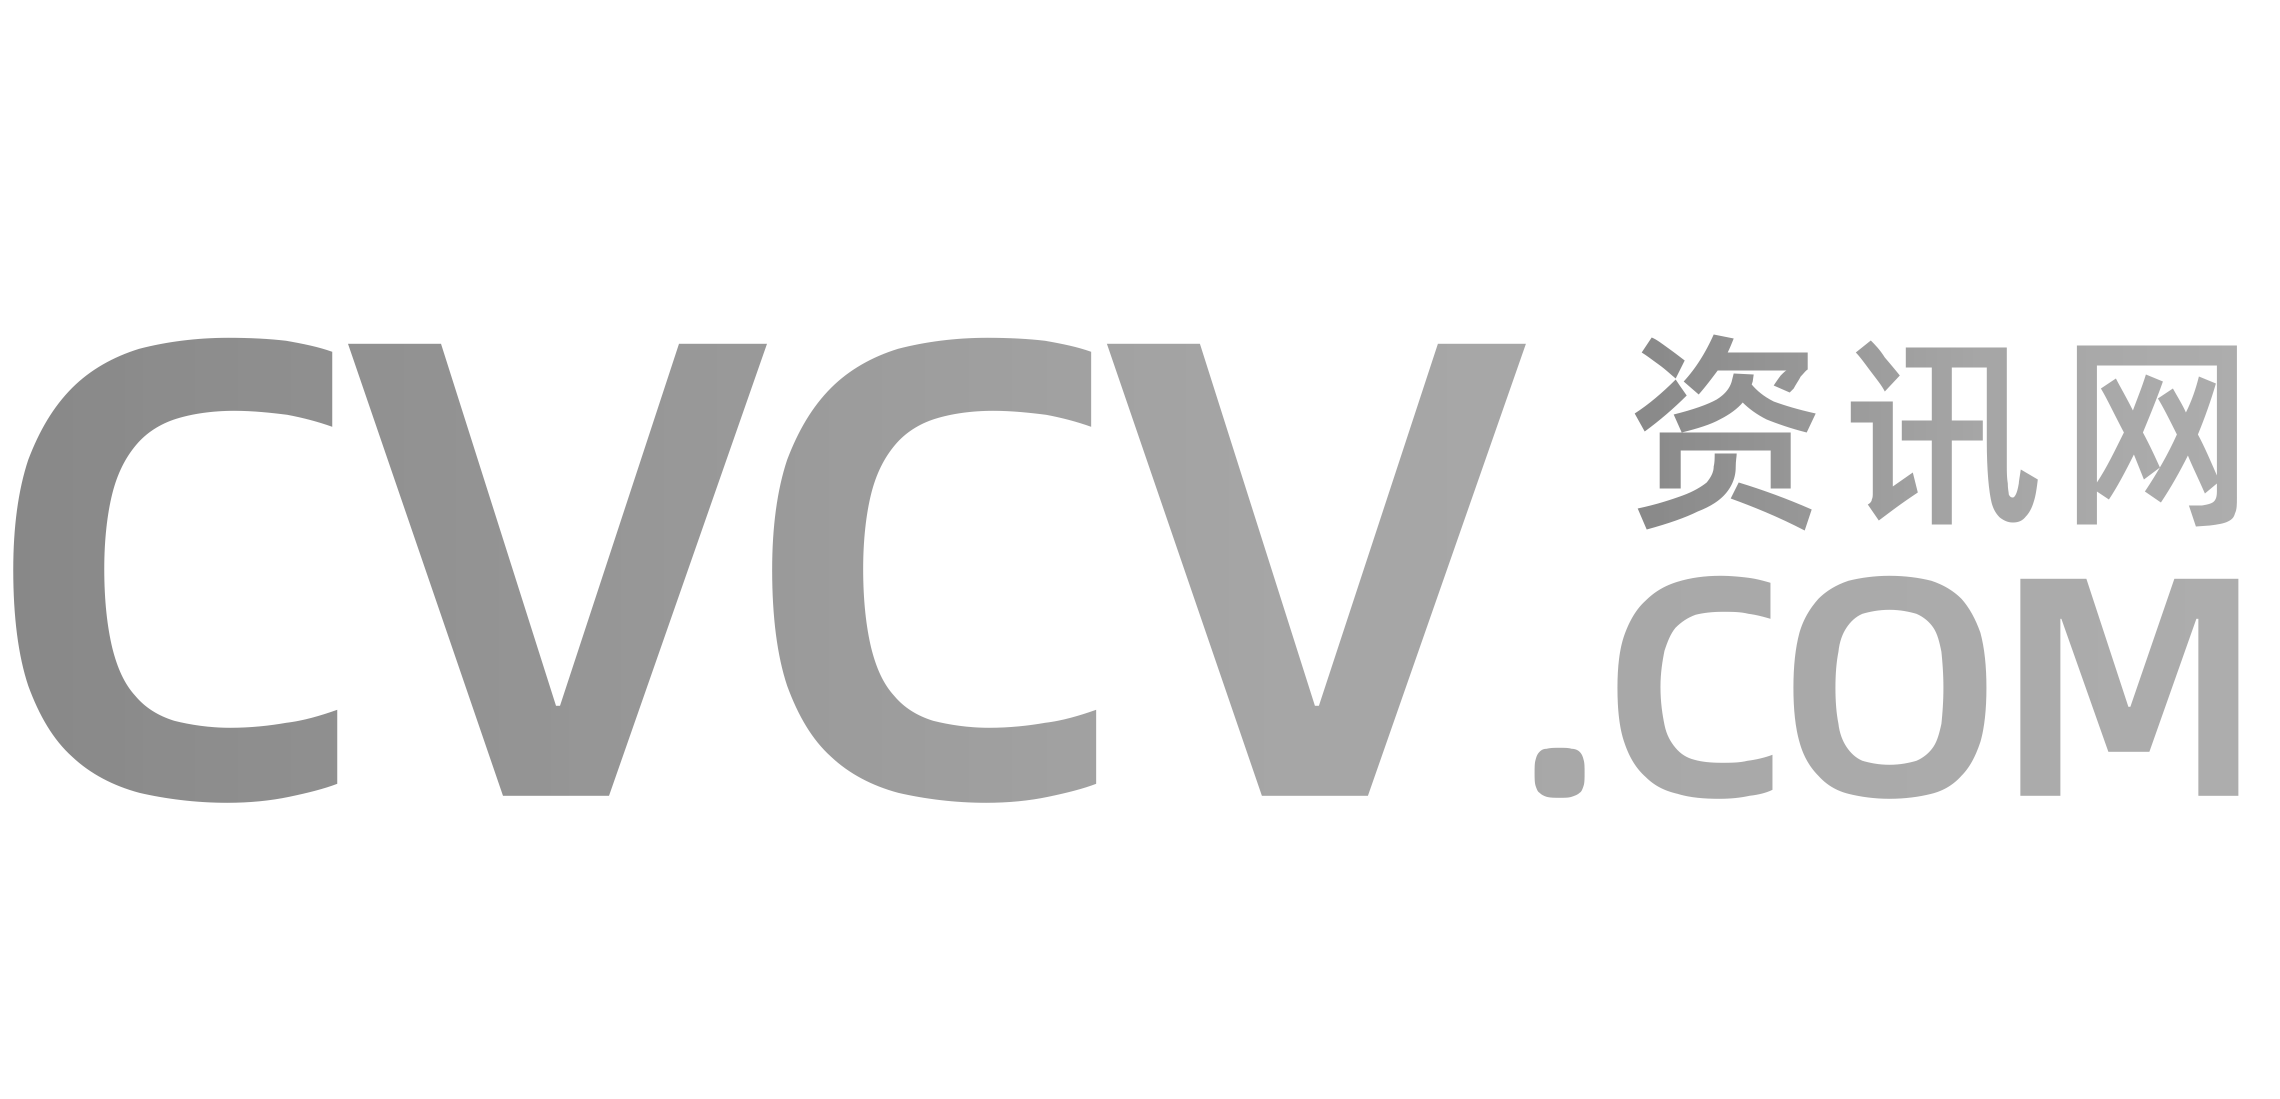 cvcv资讯网